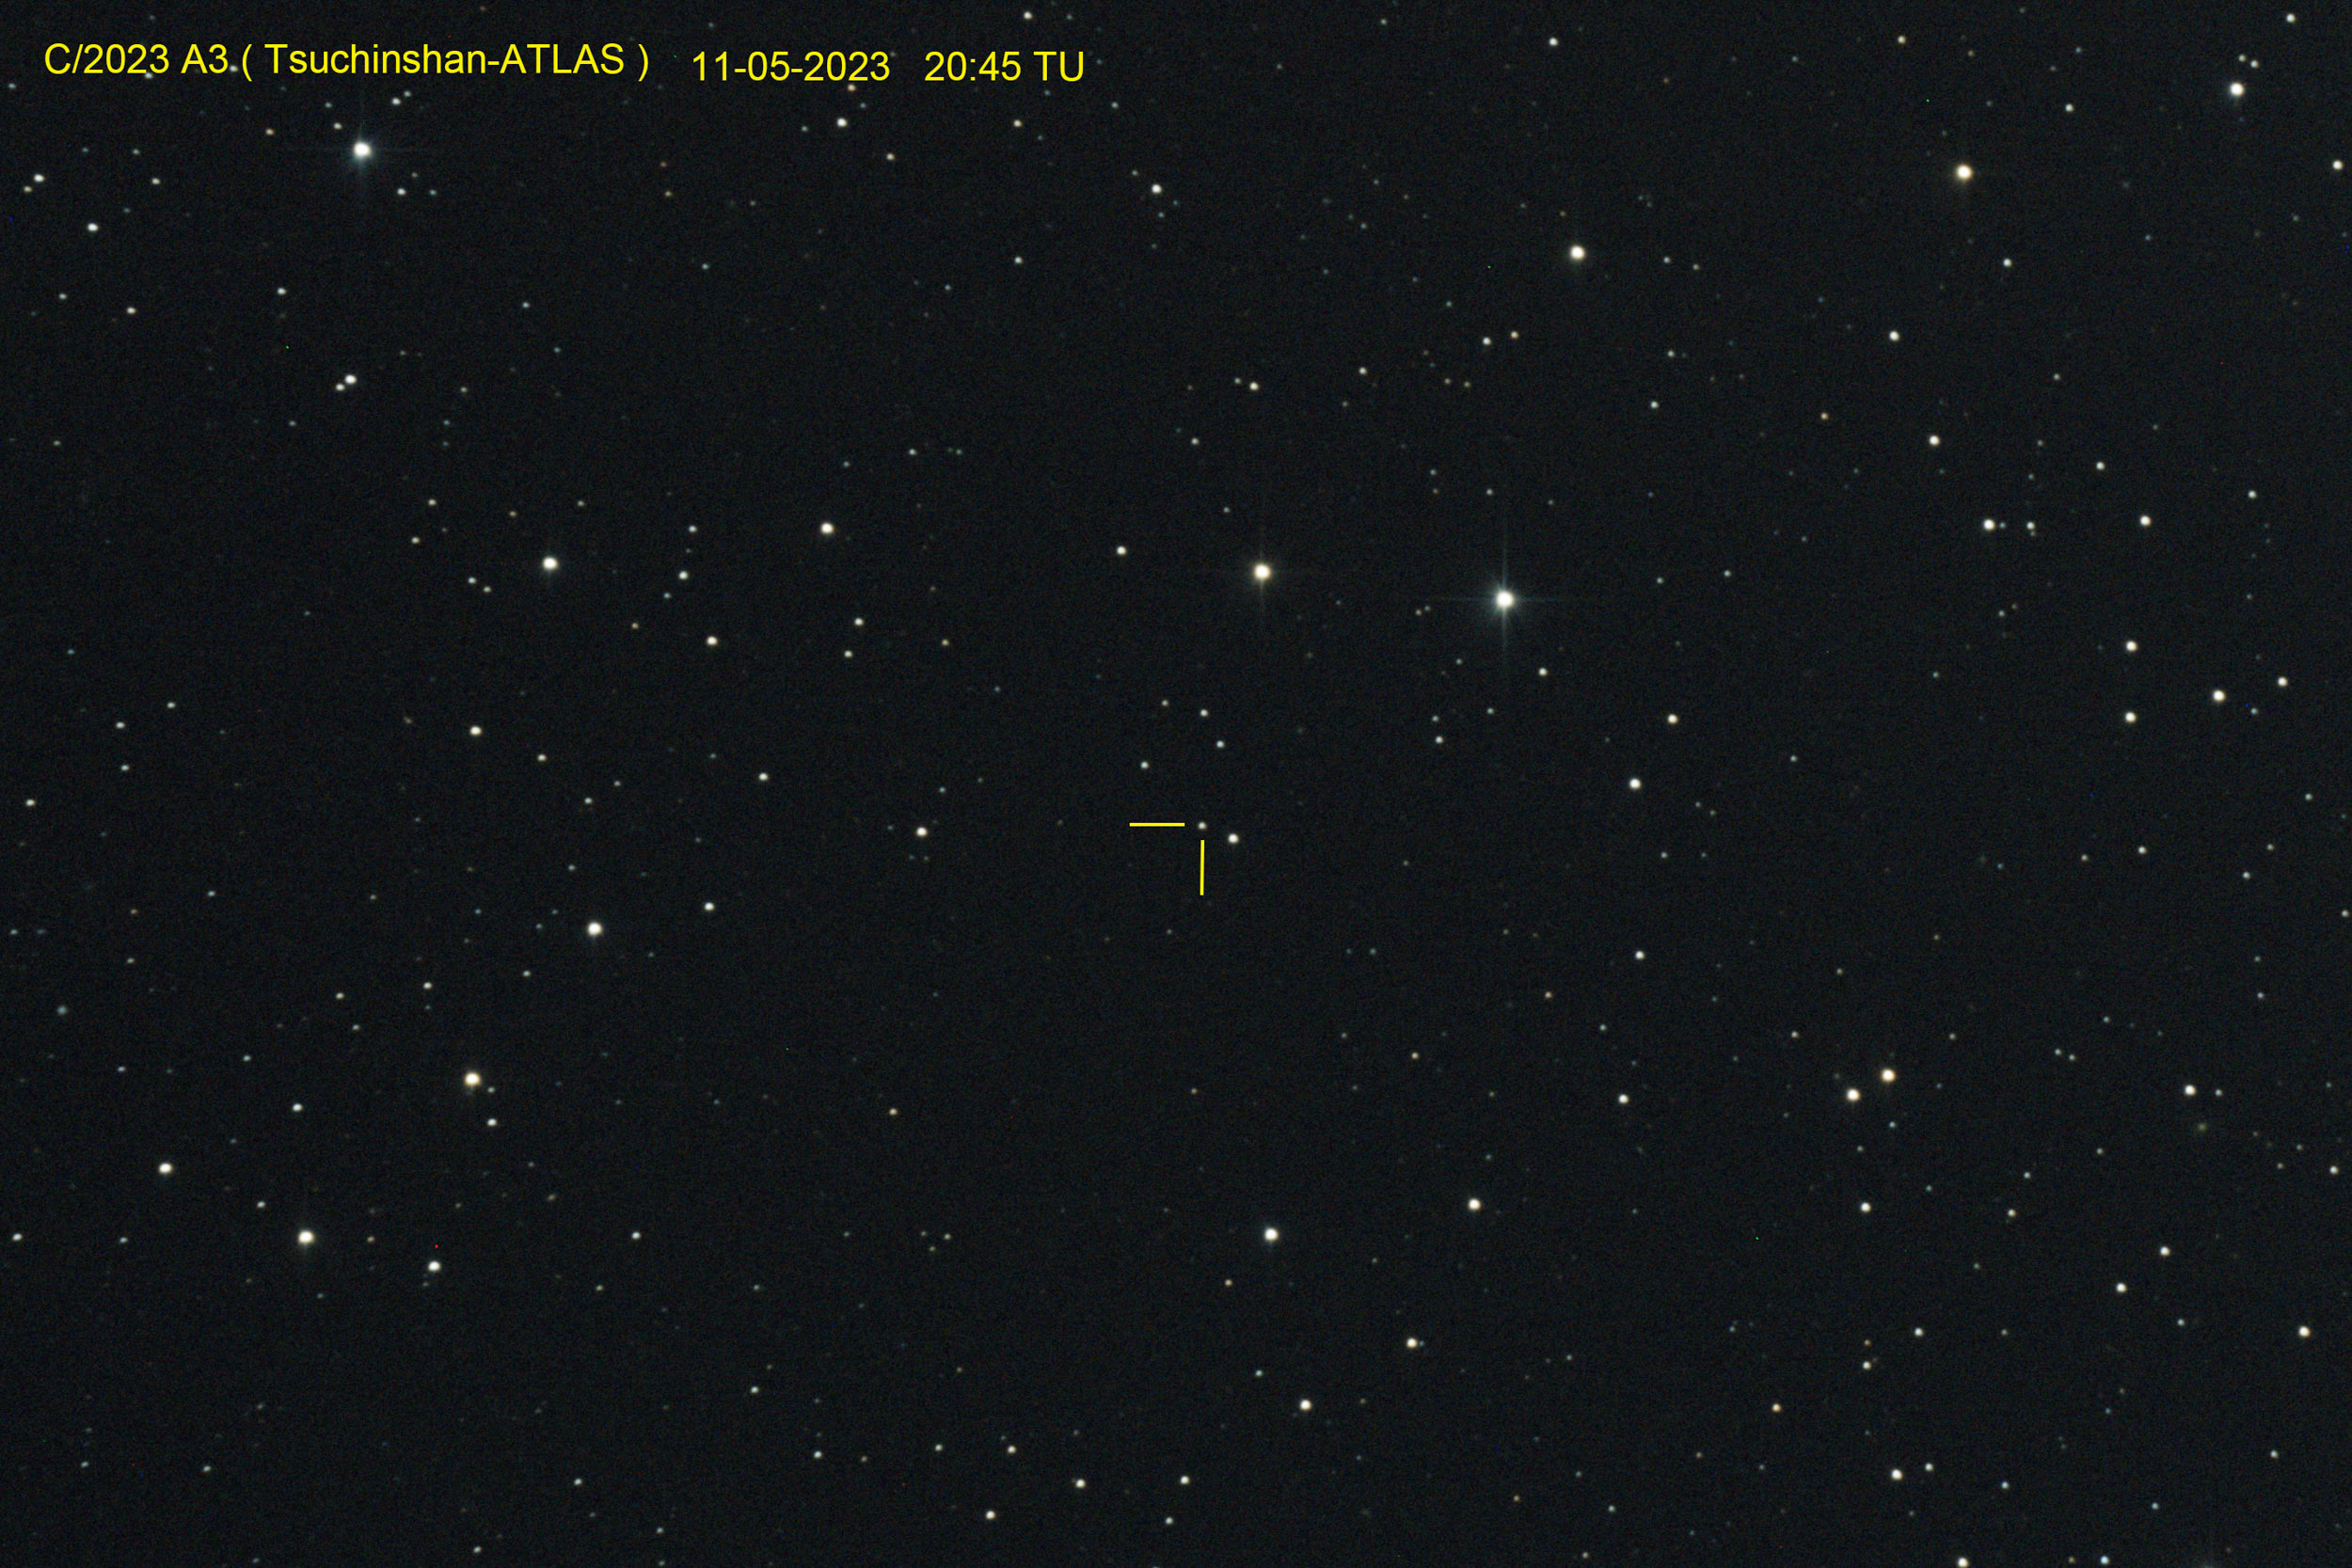 C2023 A3 (Tsuchinshan-ATLAS) cometas OSAE